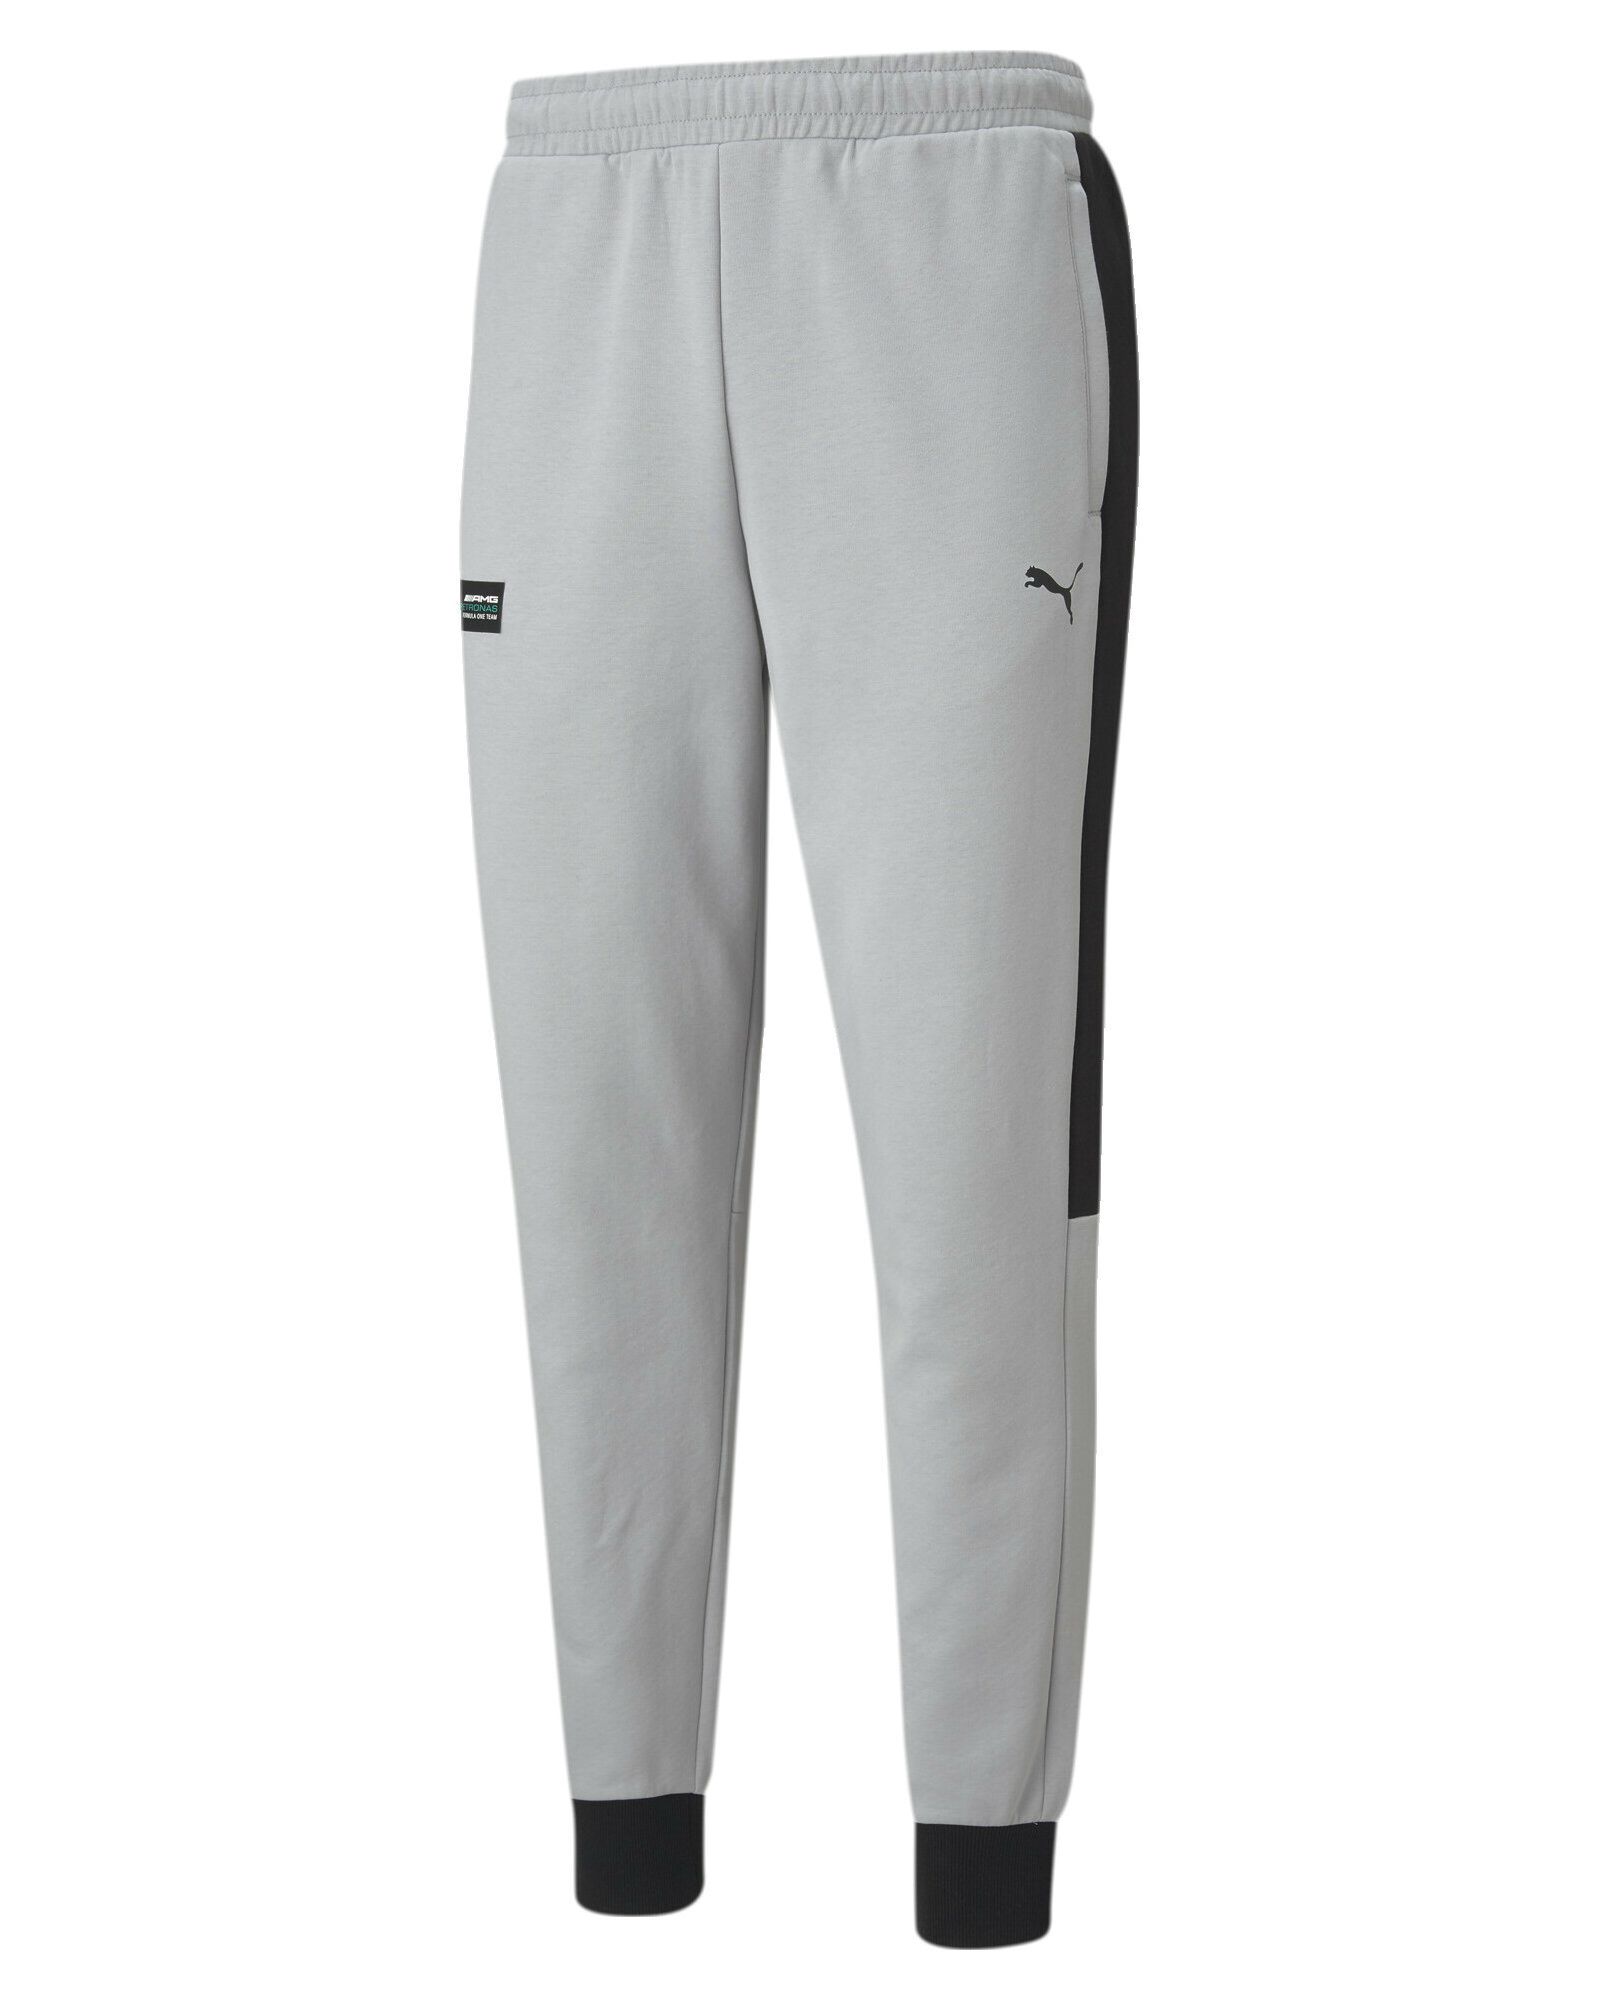 Спортивные брюки мужские PUMA MAPF1 T7 Sweat Pants серые, спортивные брюки, серый, хлопок; полиэстер  - купить